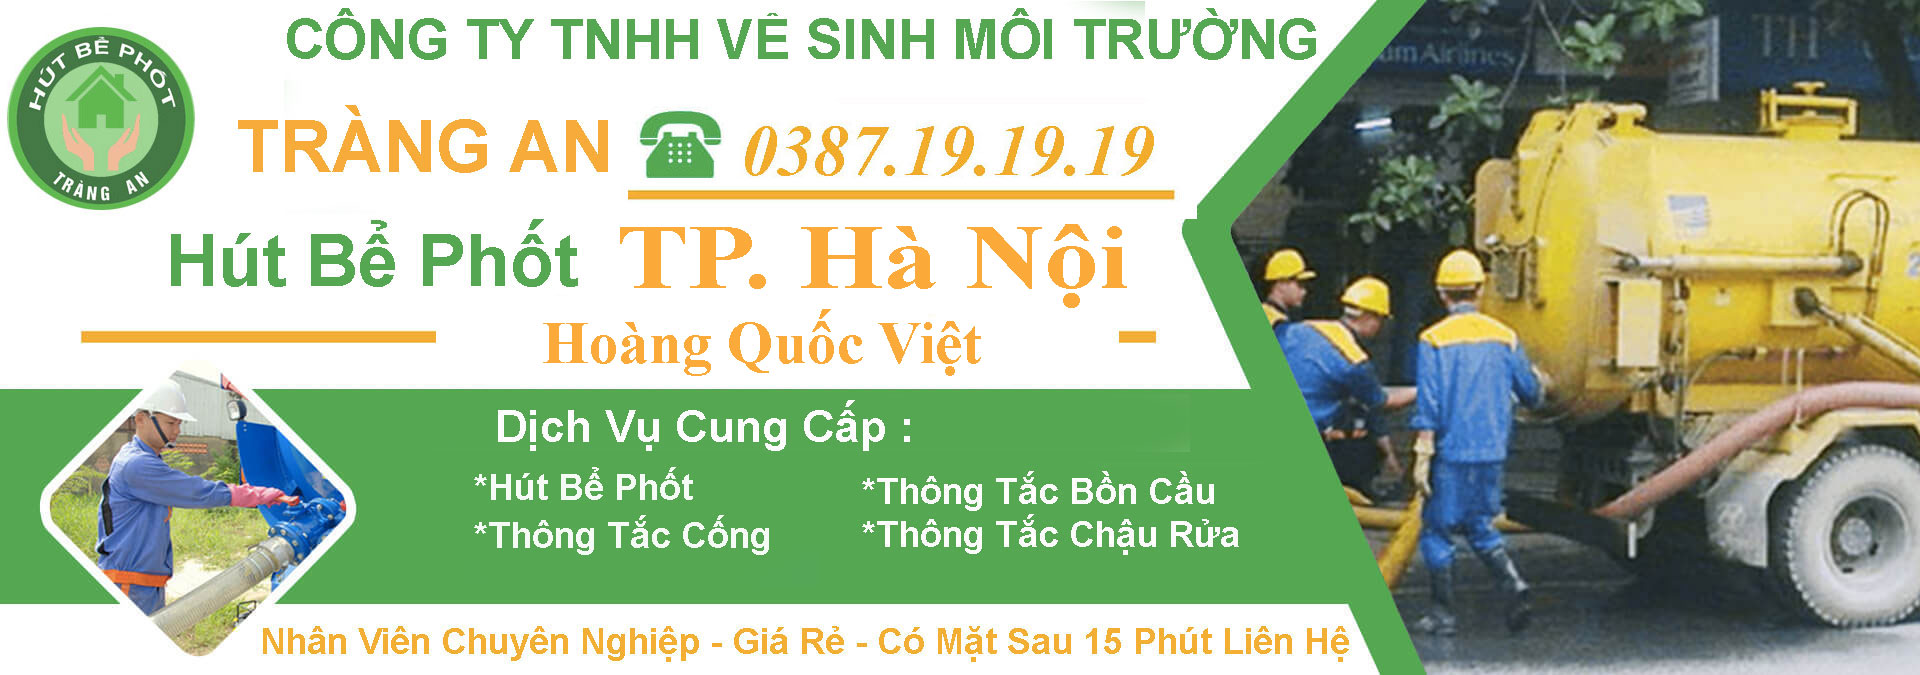 #1 Thông Tắc Cống Tại Hoàng Quốc Việt【Tràng An】giá 5OK – BH 5 Năm